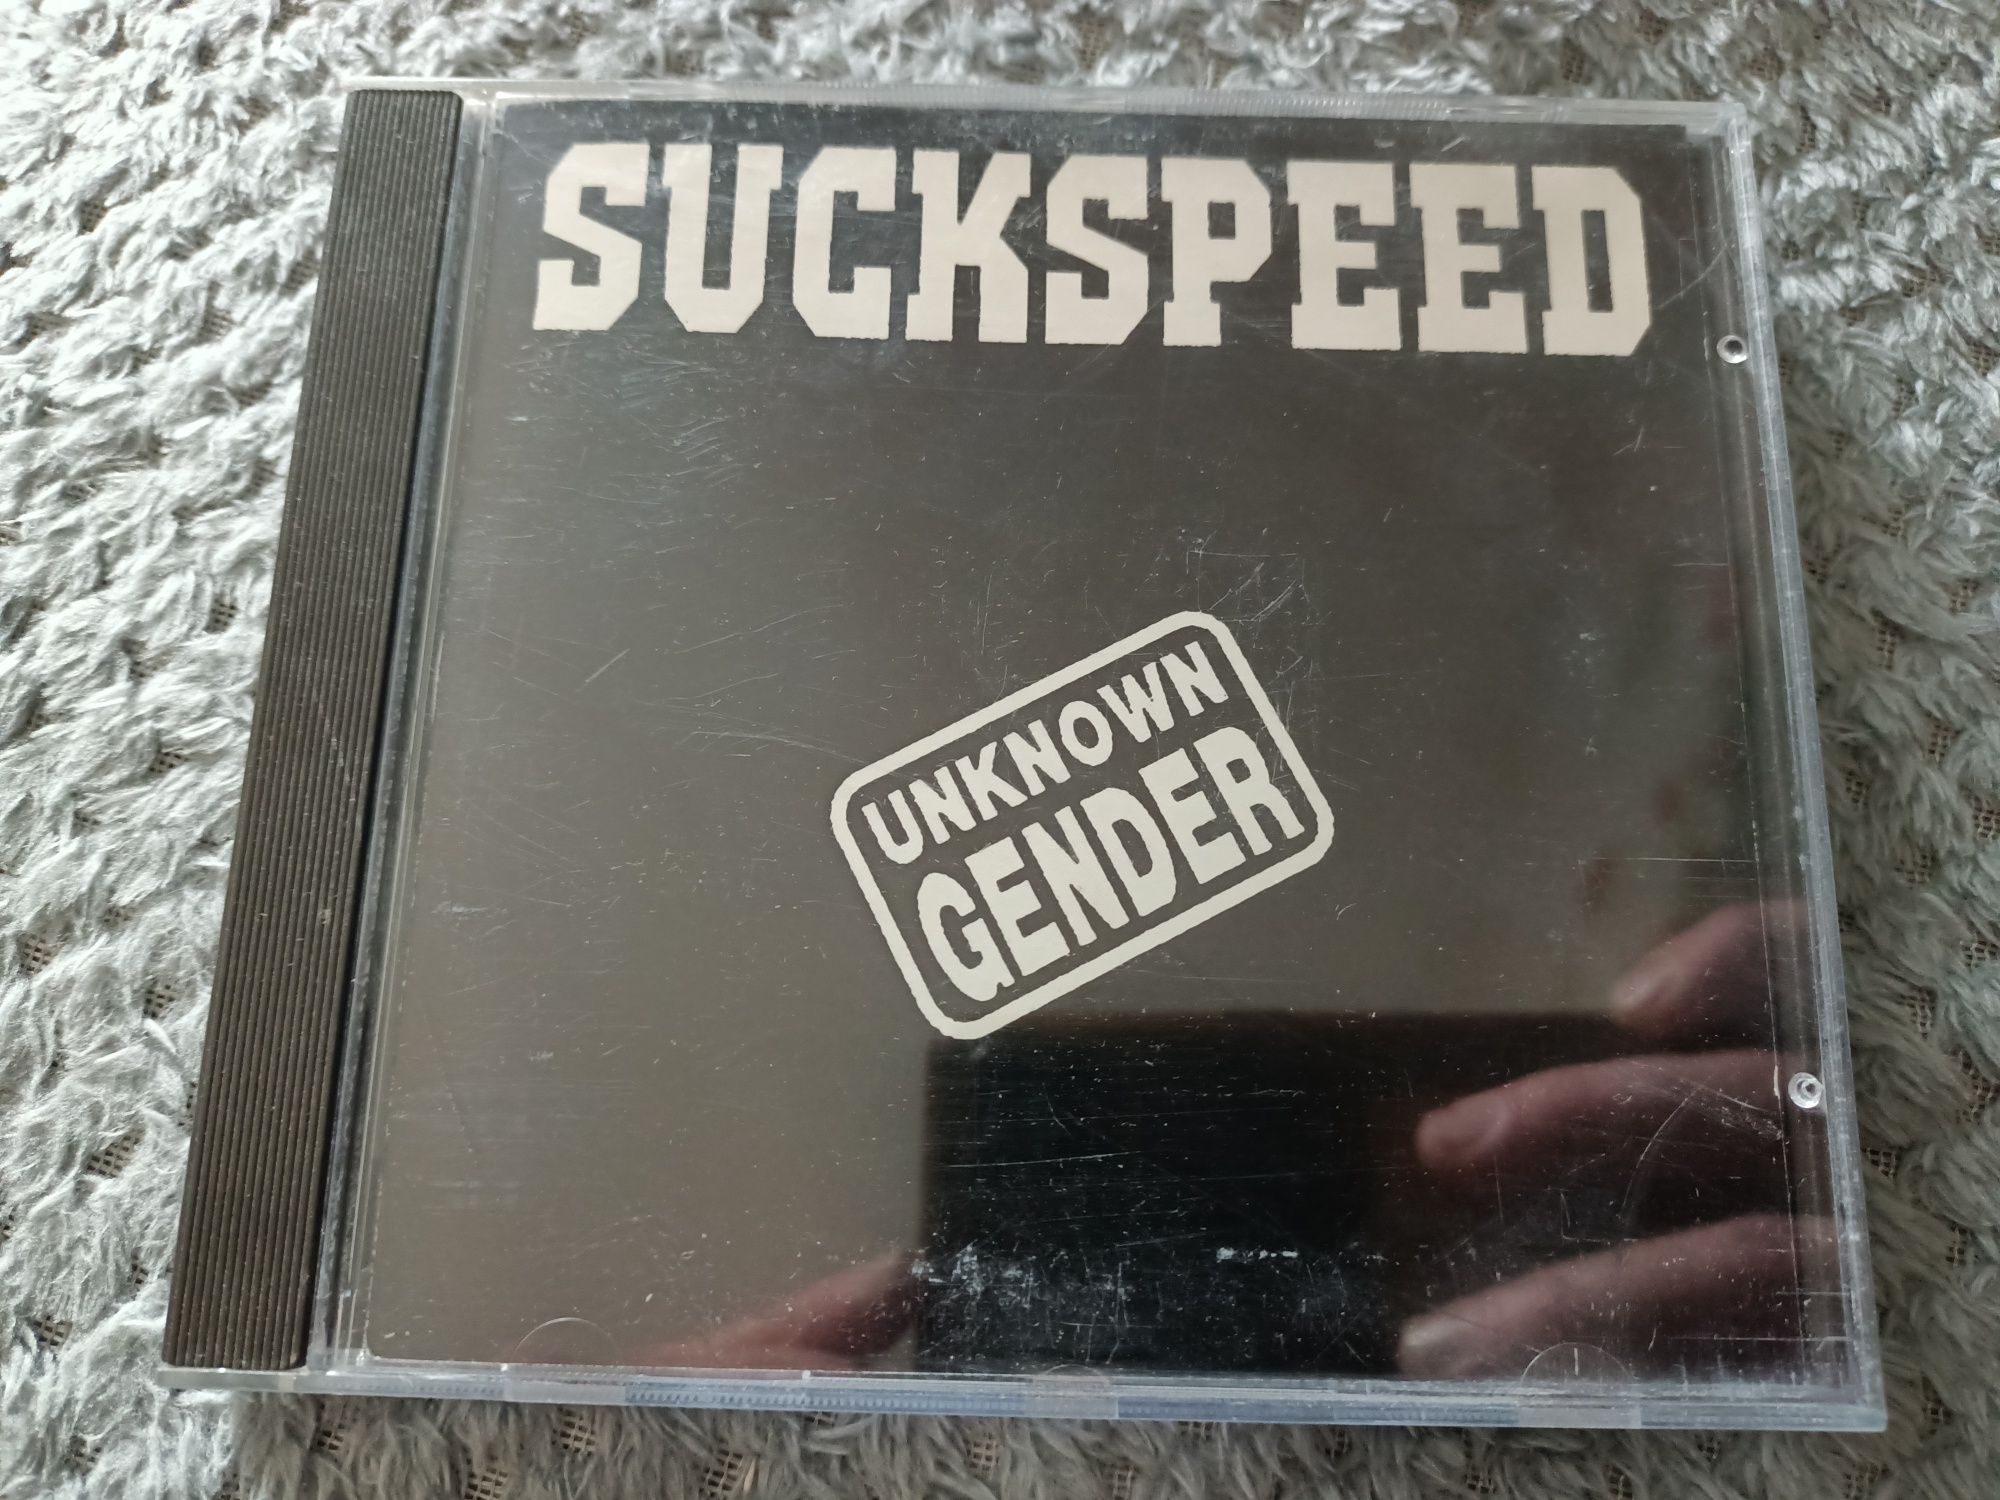 Suckspeed - Unknown Gender (CD, MiniAlbum)(Hardcore, Heavy Meta)(vg+)